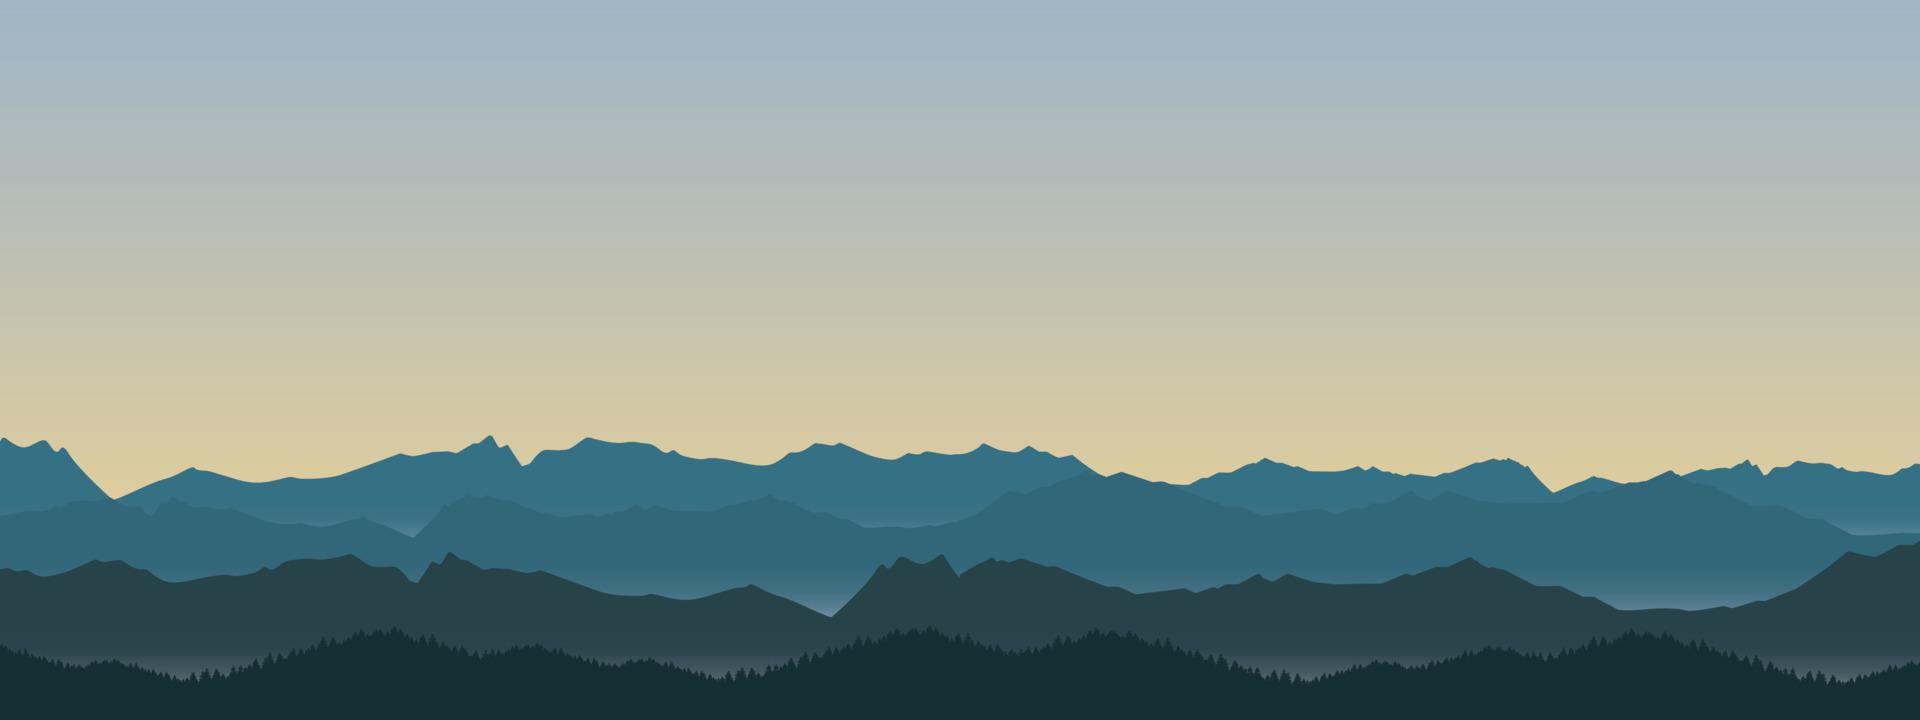 dimmigt berg och skogslandskap illustration på morgonen och kvällen vektor